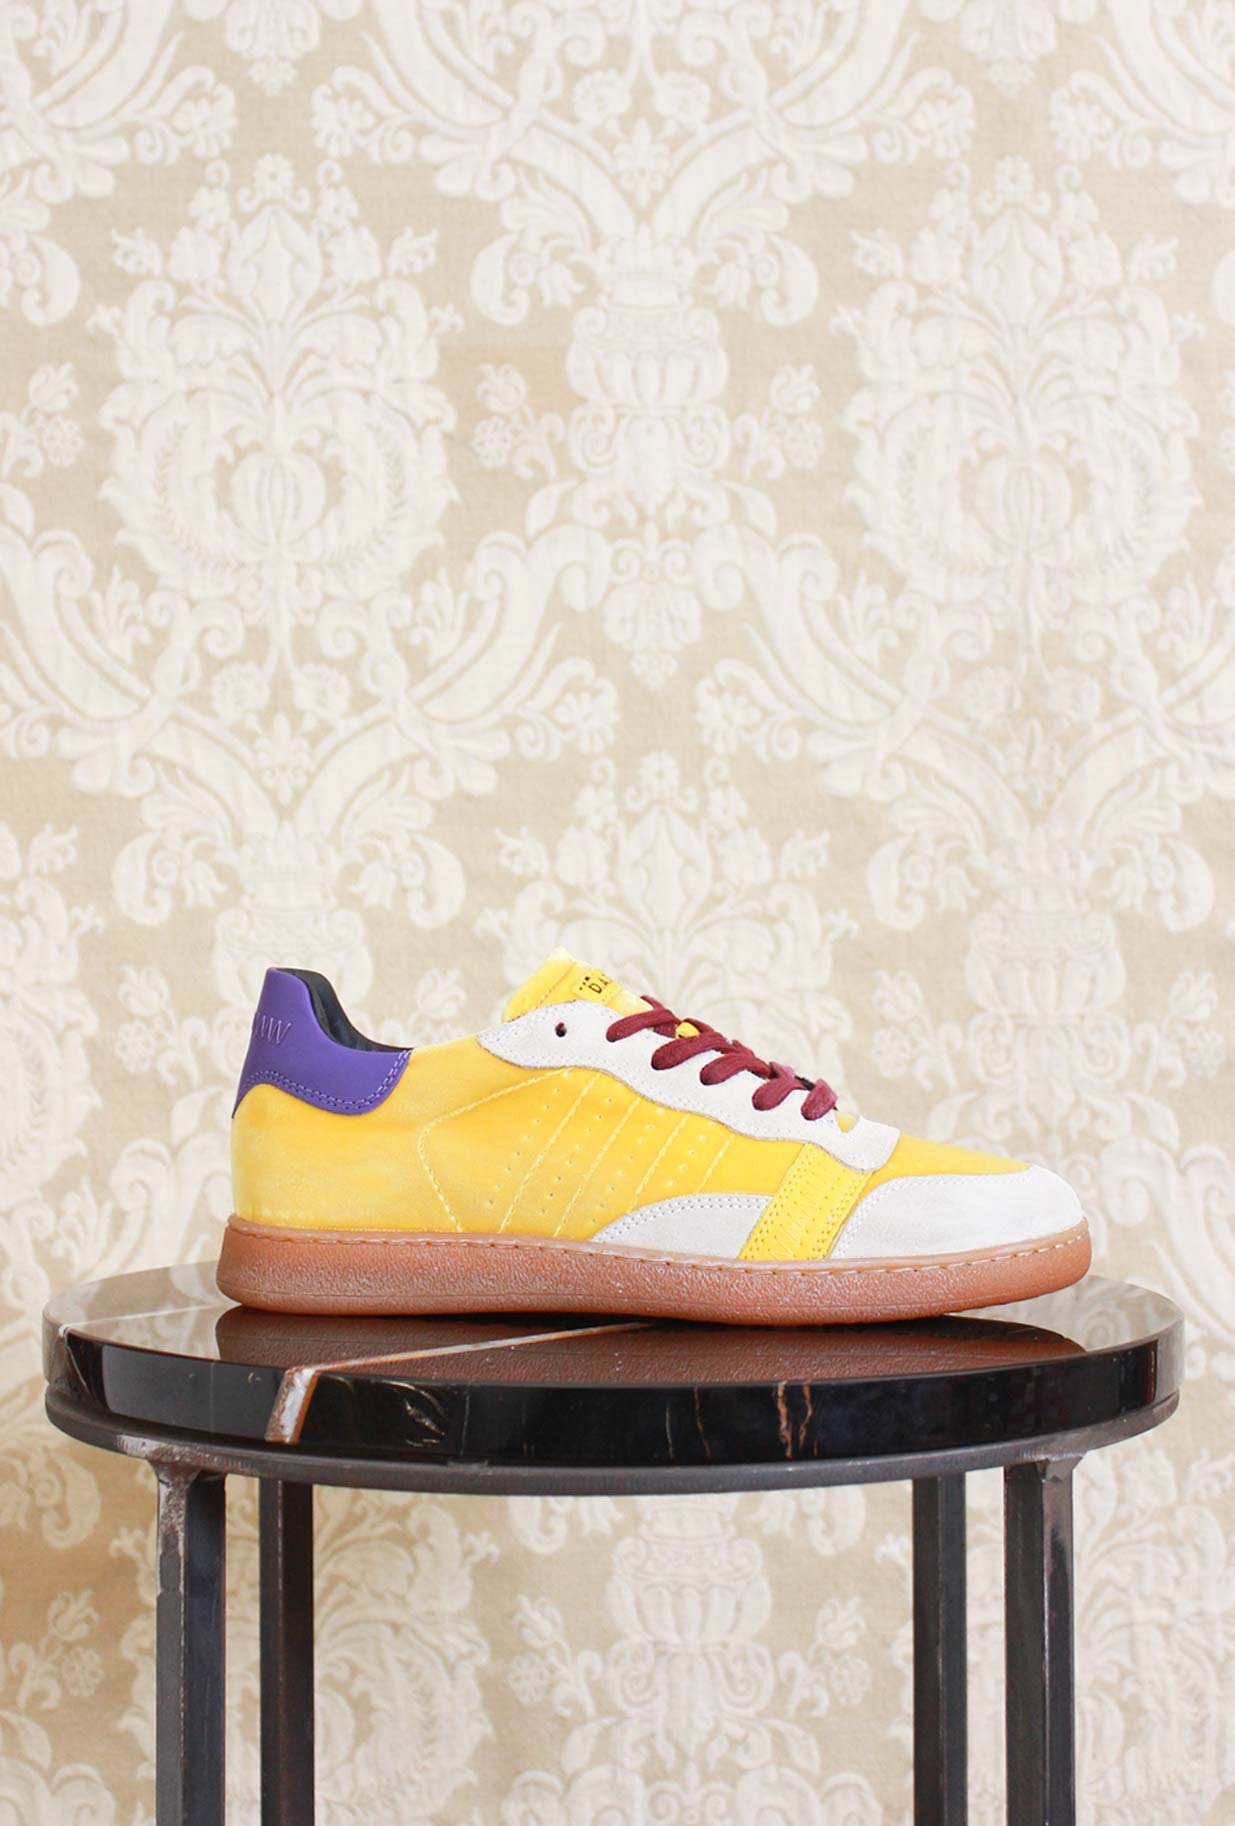 Nuova Sporty sneakers di DATE modello gazzelle in velluto yellow da donna fw23